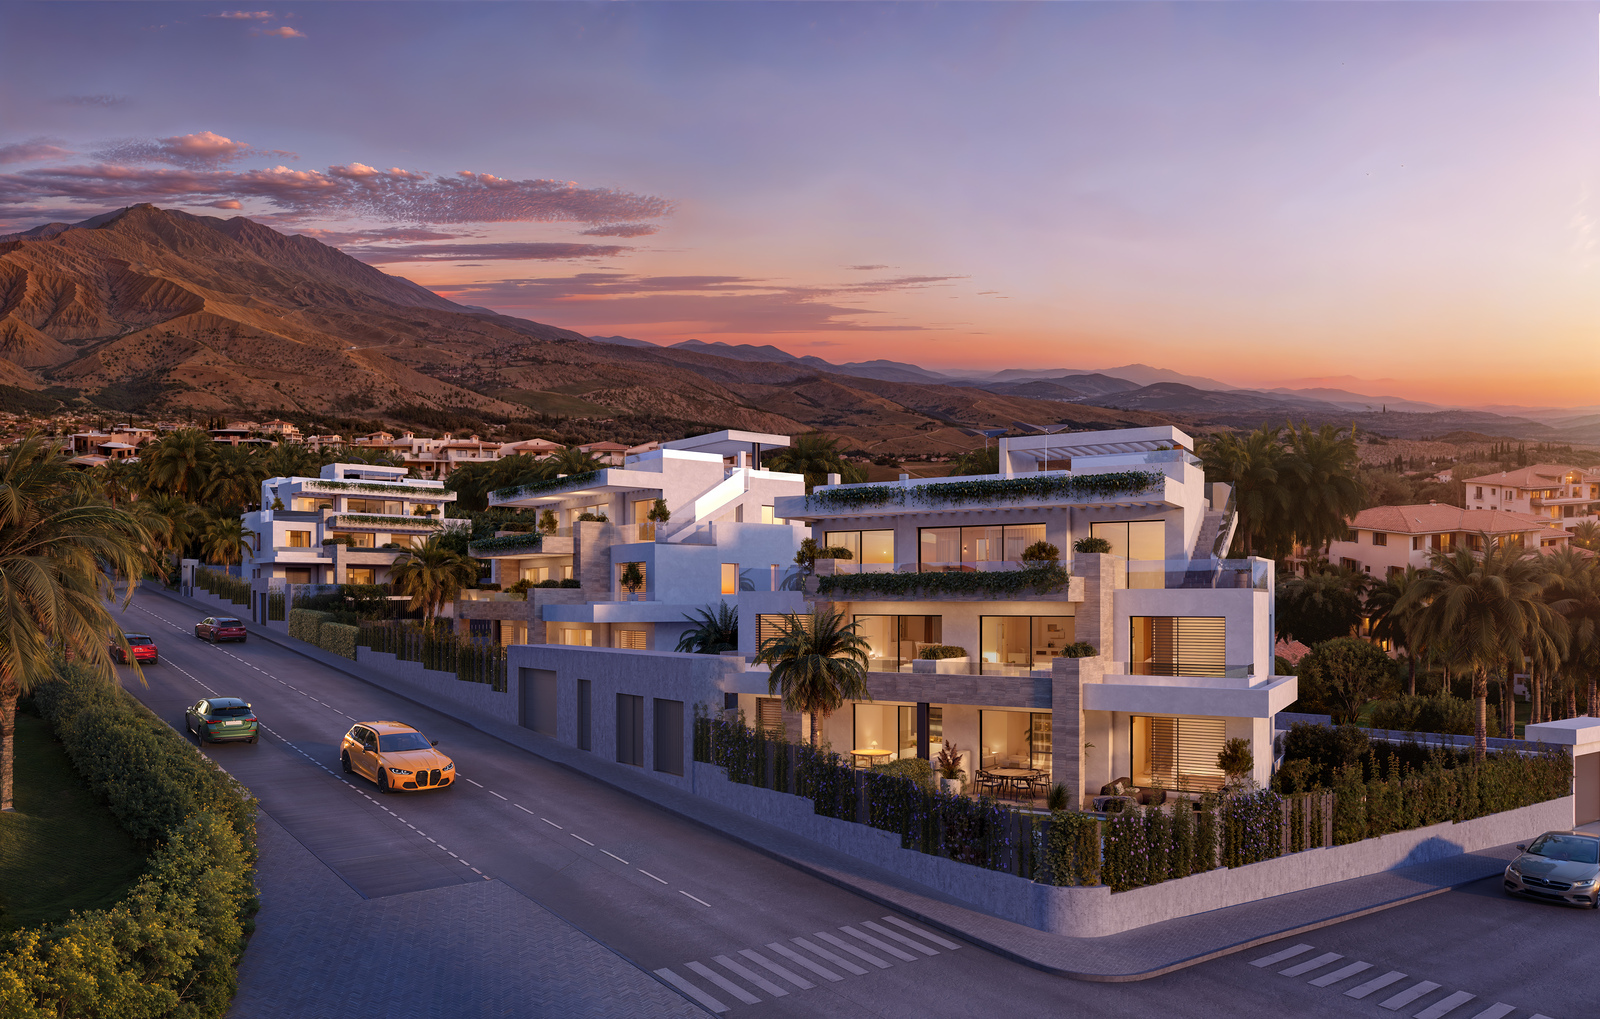 Equilibrio - 15 apartamentów w prywatnym kompleksie zaledwie 220 m od plaży w Esteponie